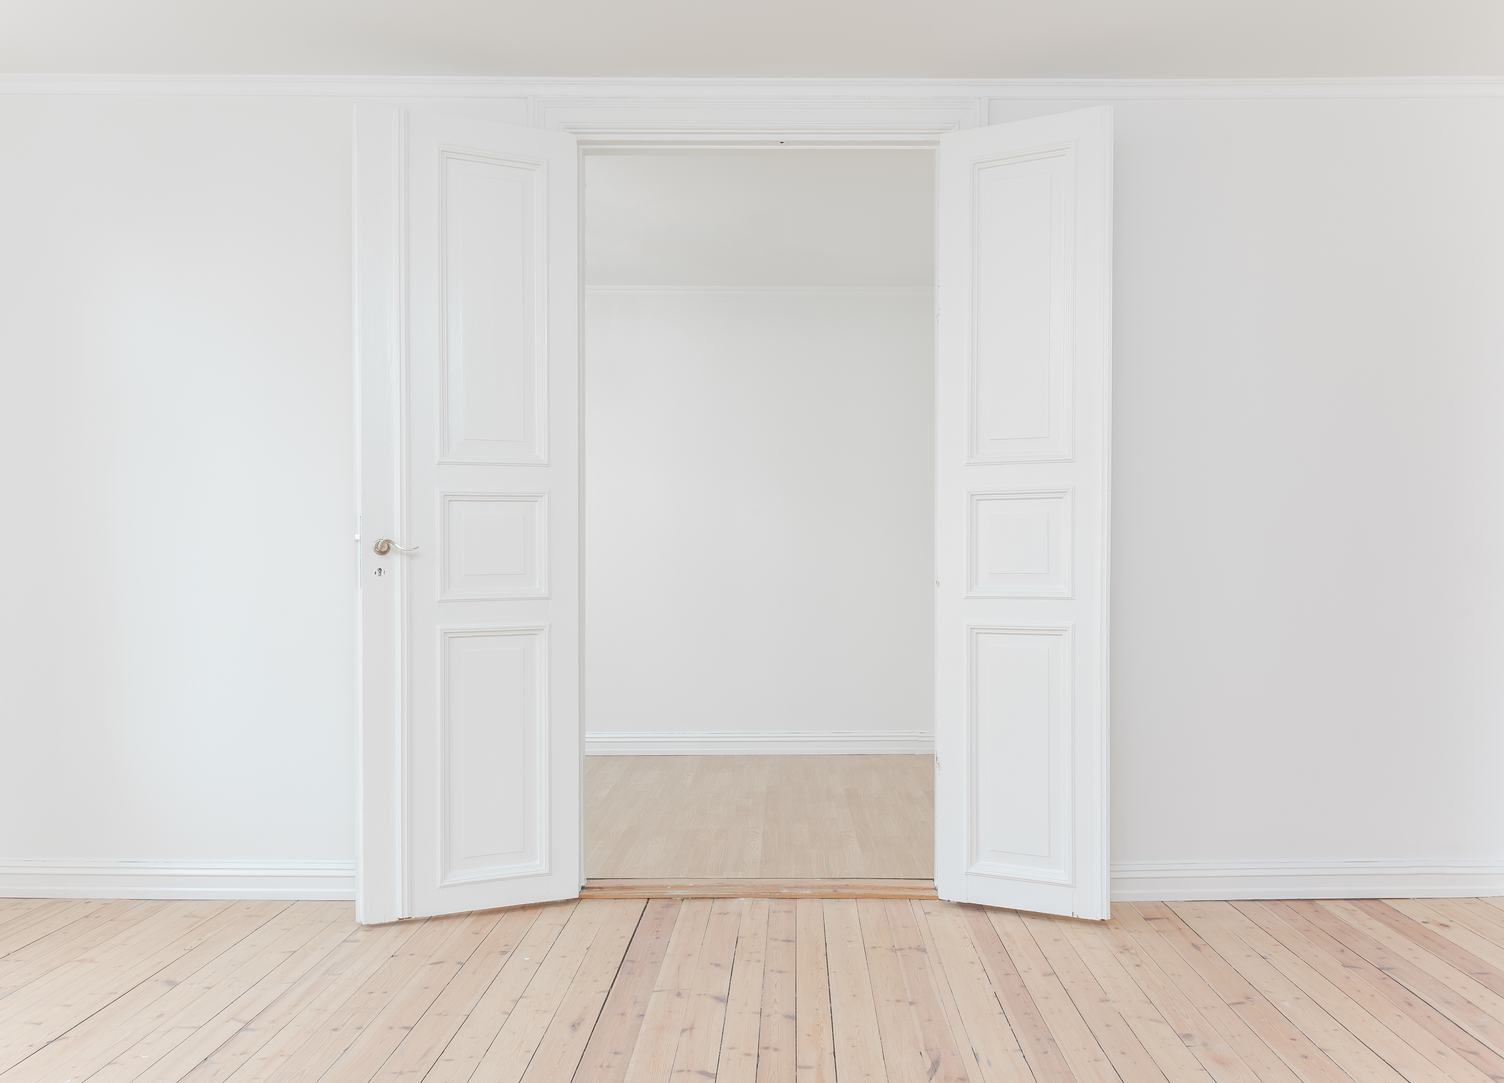 White Door in Empty Apartment Room with Wooden Floor